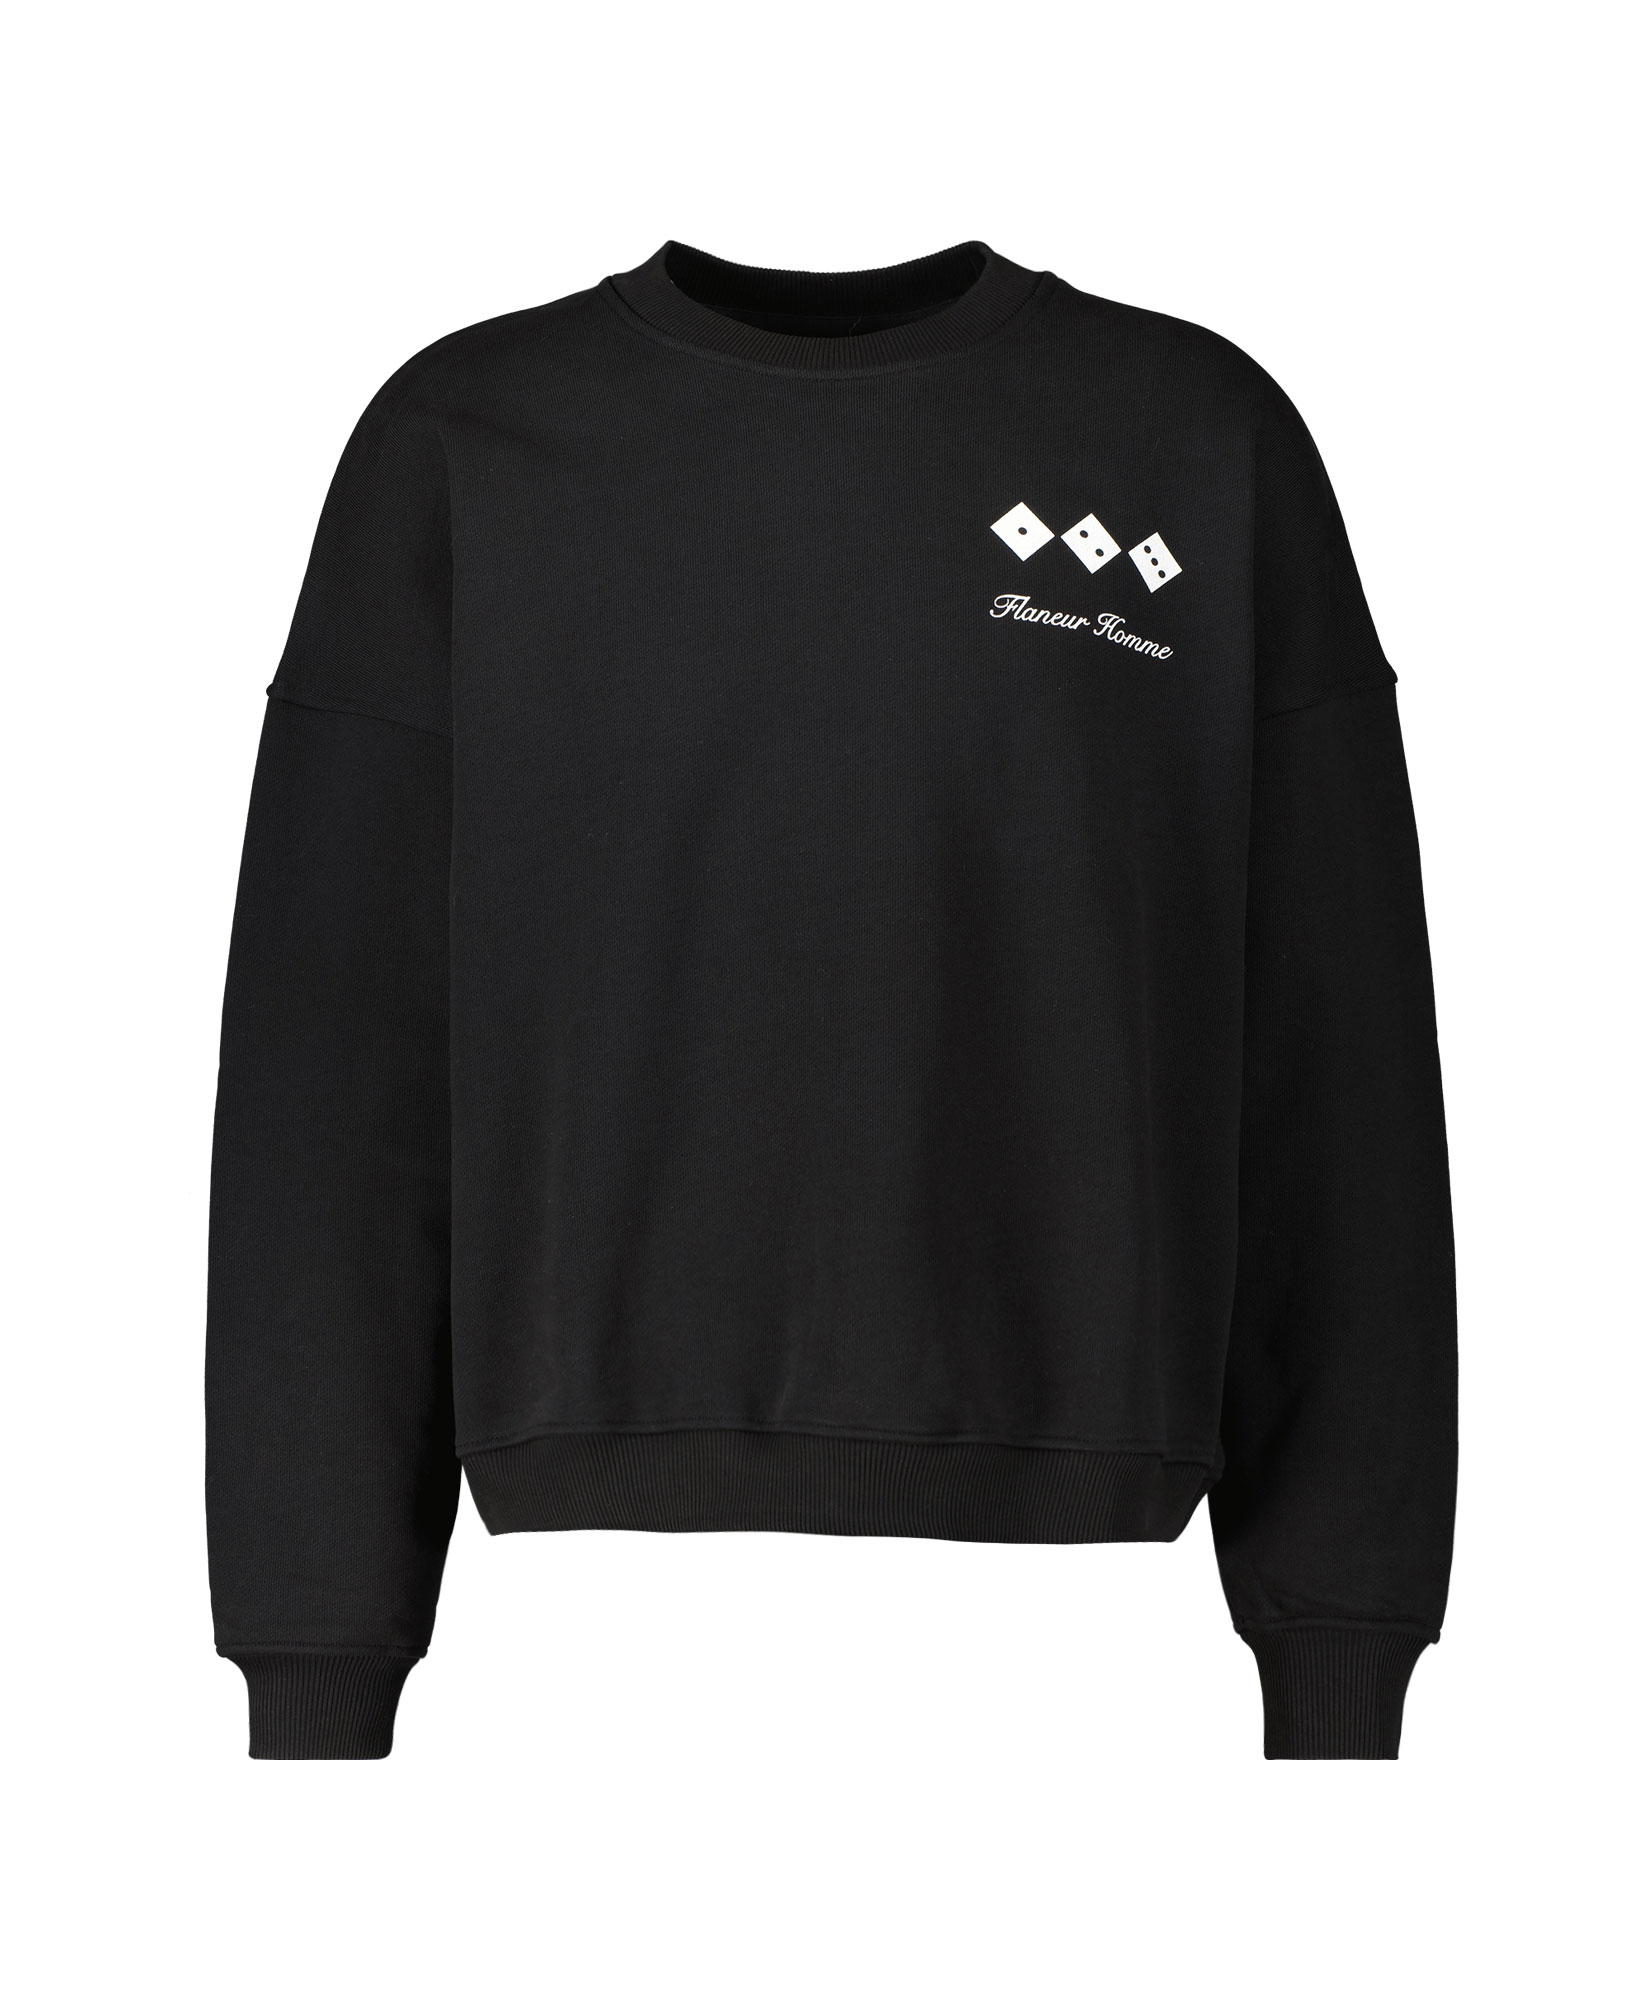 Flaneur Homme Sweater Interbellum Sweater Zwart